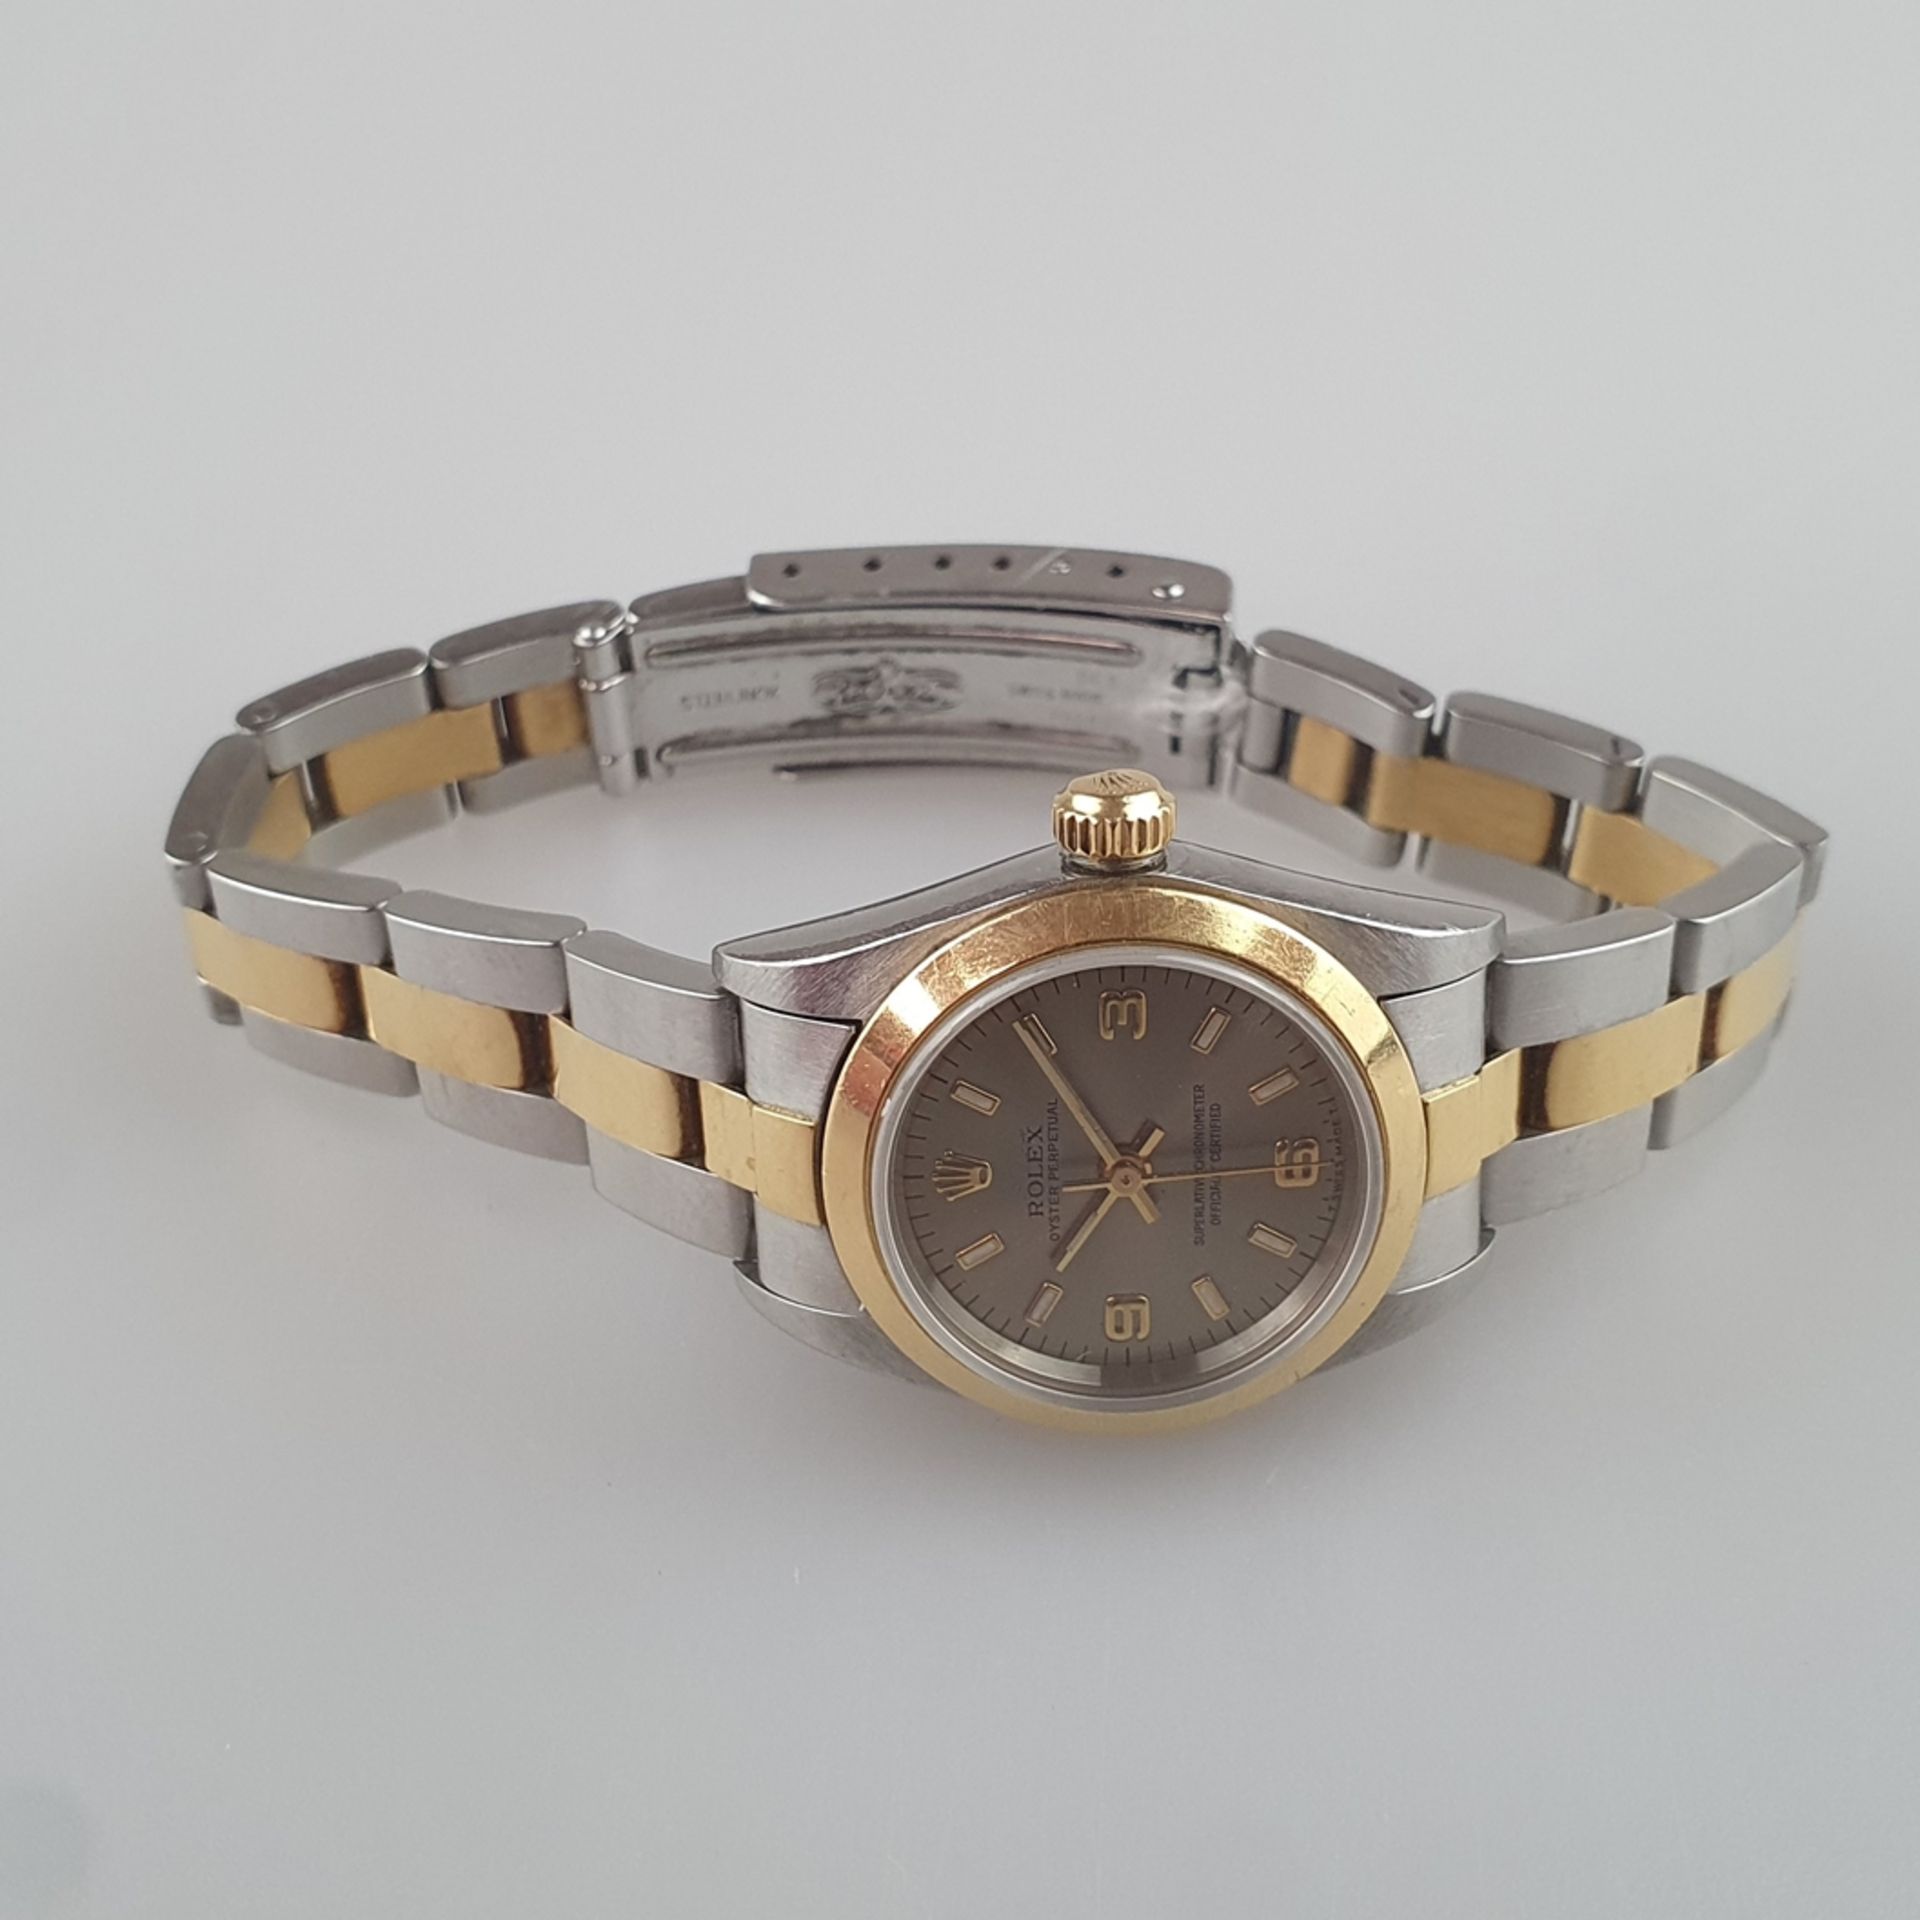 Rolex-Damenarmbanduhr - Oyster Perpetual, Datejust, bicolores Gehäuse und Armband aus 18K Gelbgold  - Bild 3 aus 10